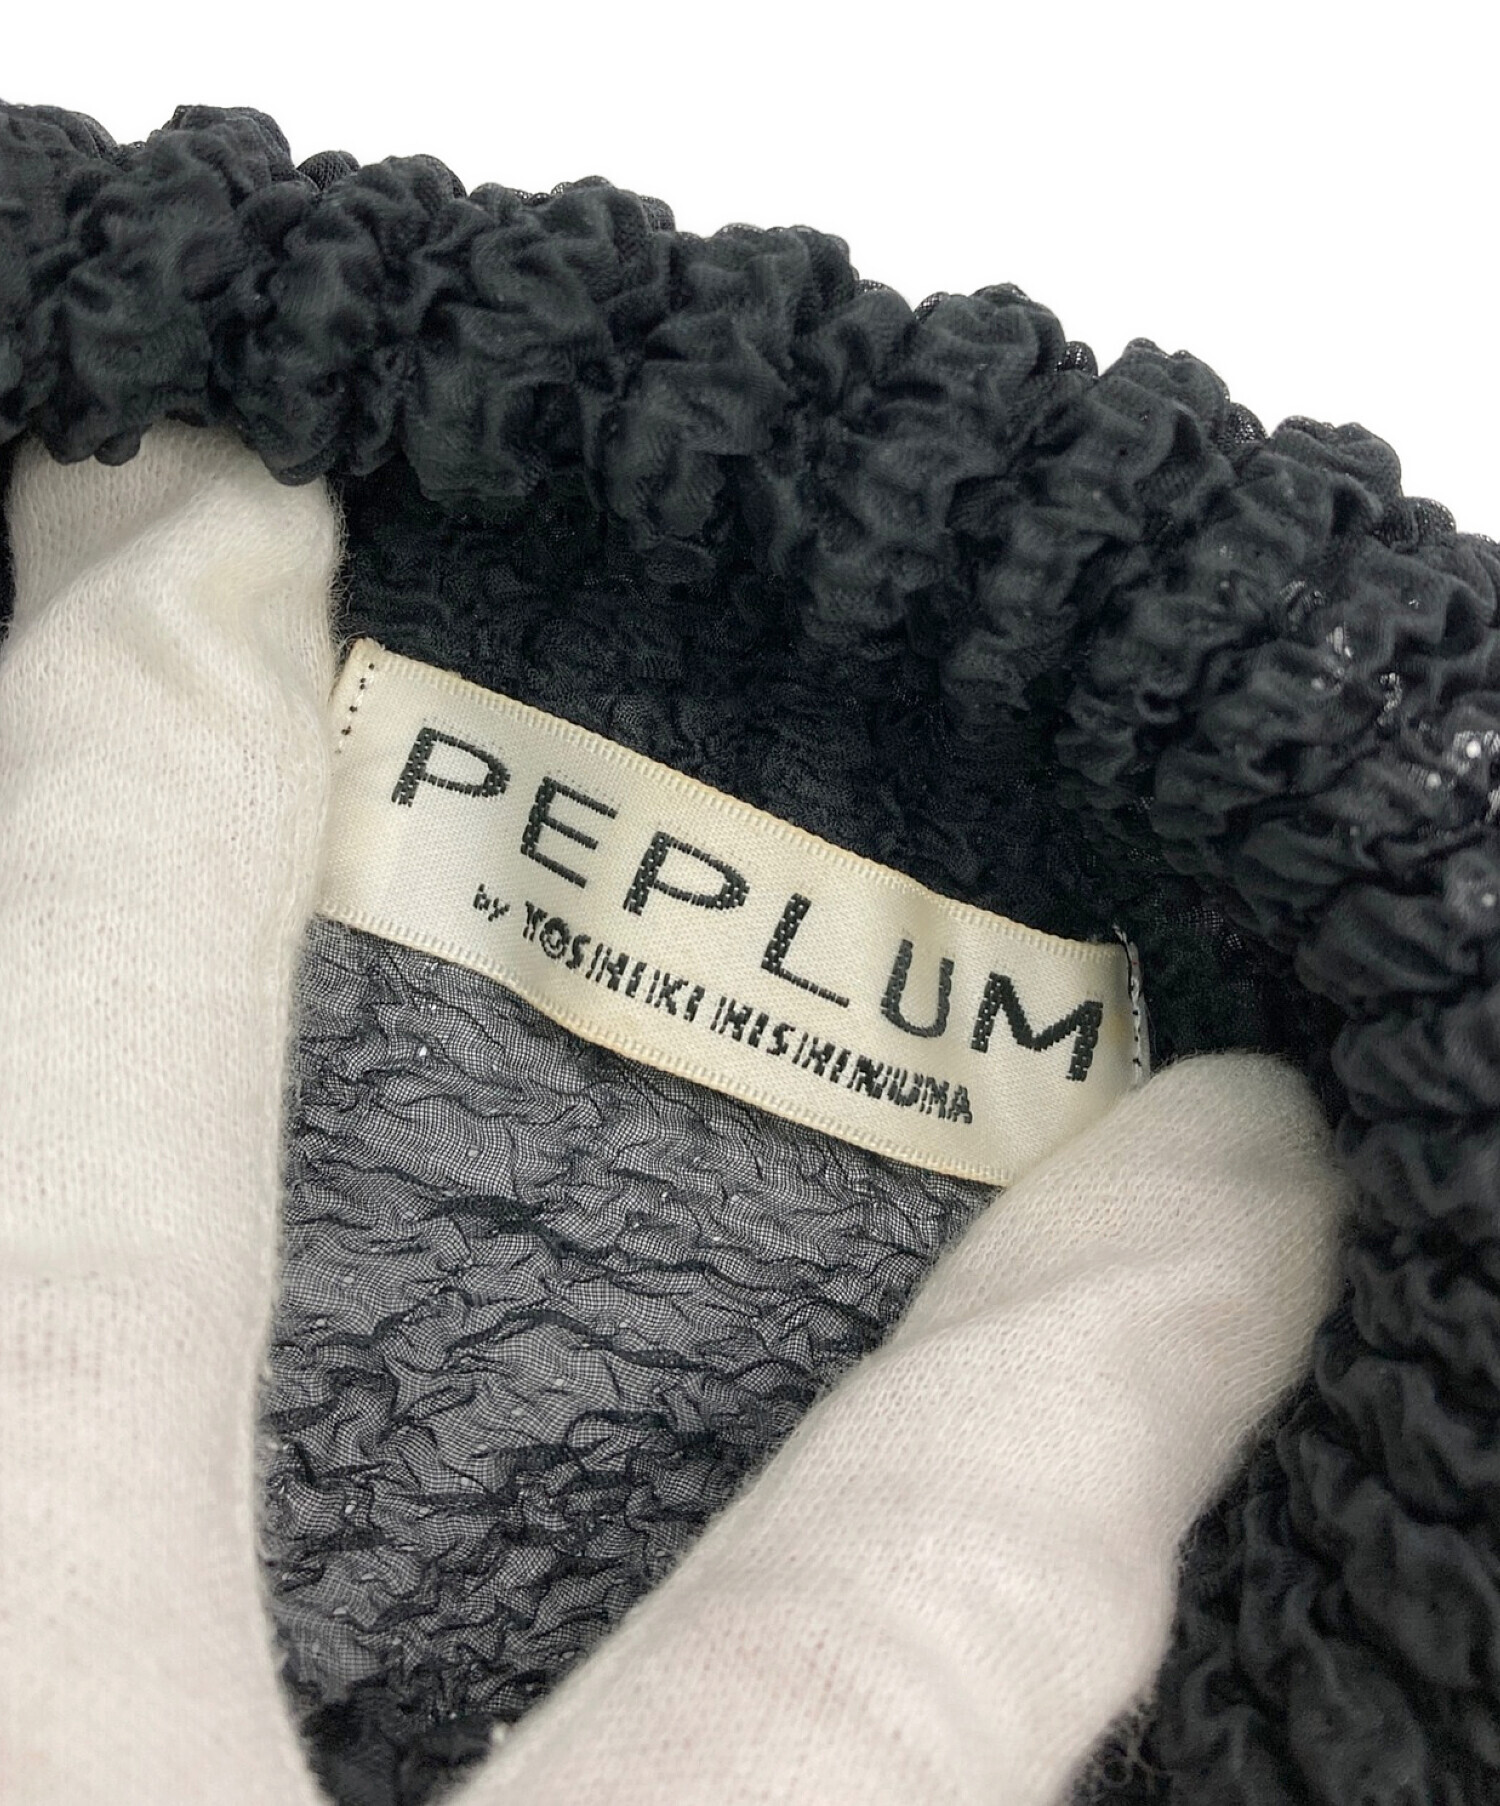 peplum ヨシキヒシヌマ ブラウス着用は2回ほどの美品 - シャツ 